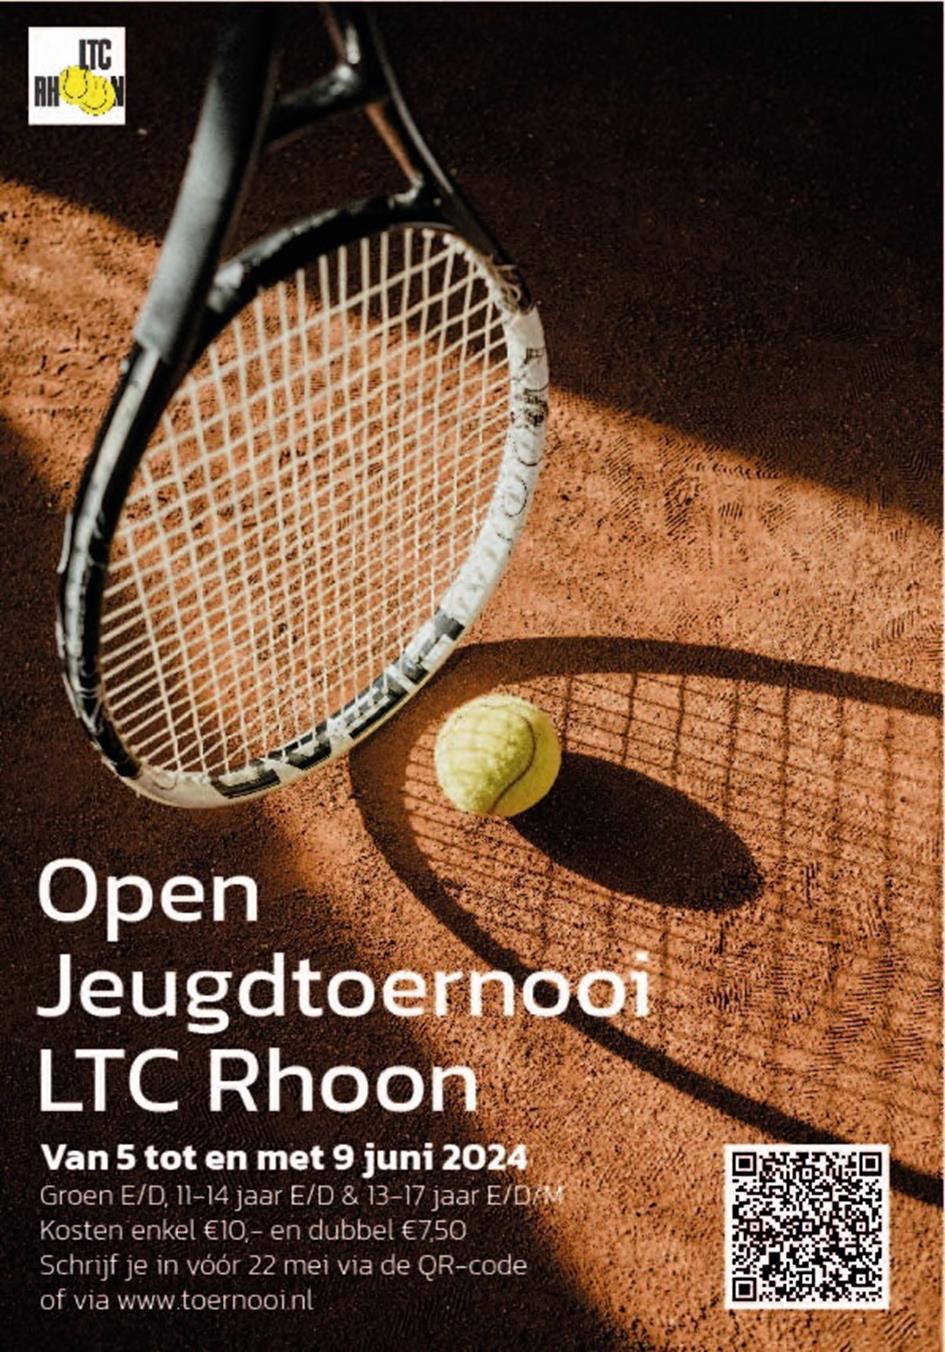 LTC Rhoon Open Jeugd.jpg